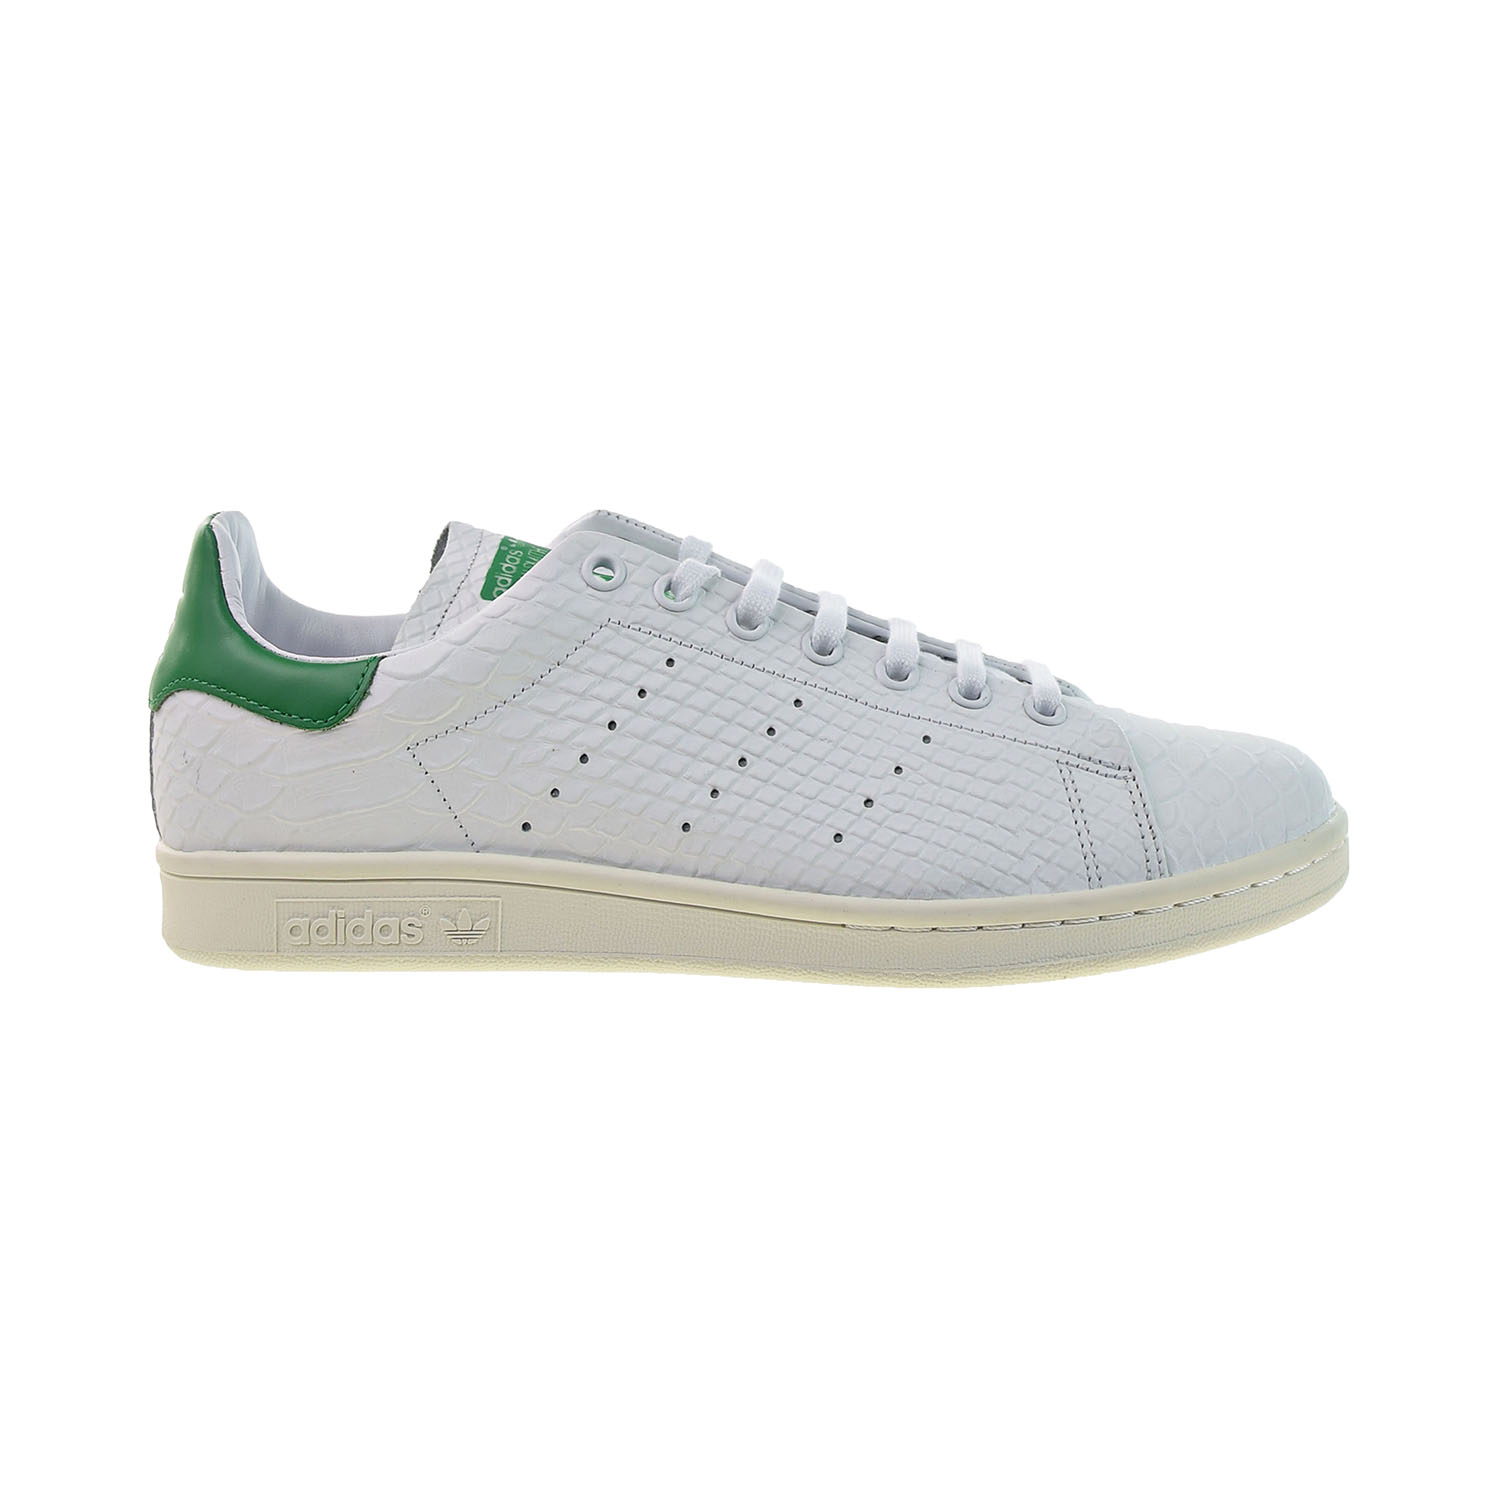 Adidas Stan Smith Recon Men S Shoes Crystal White Off White Fu9587 Ebay